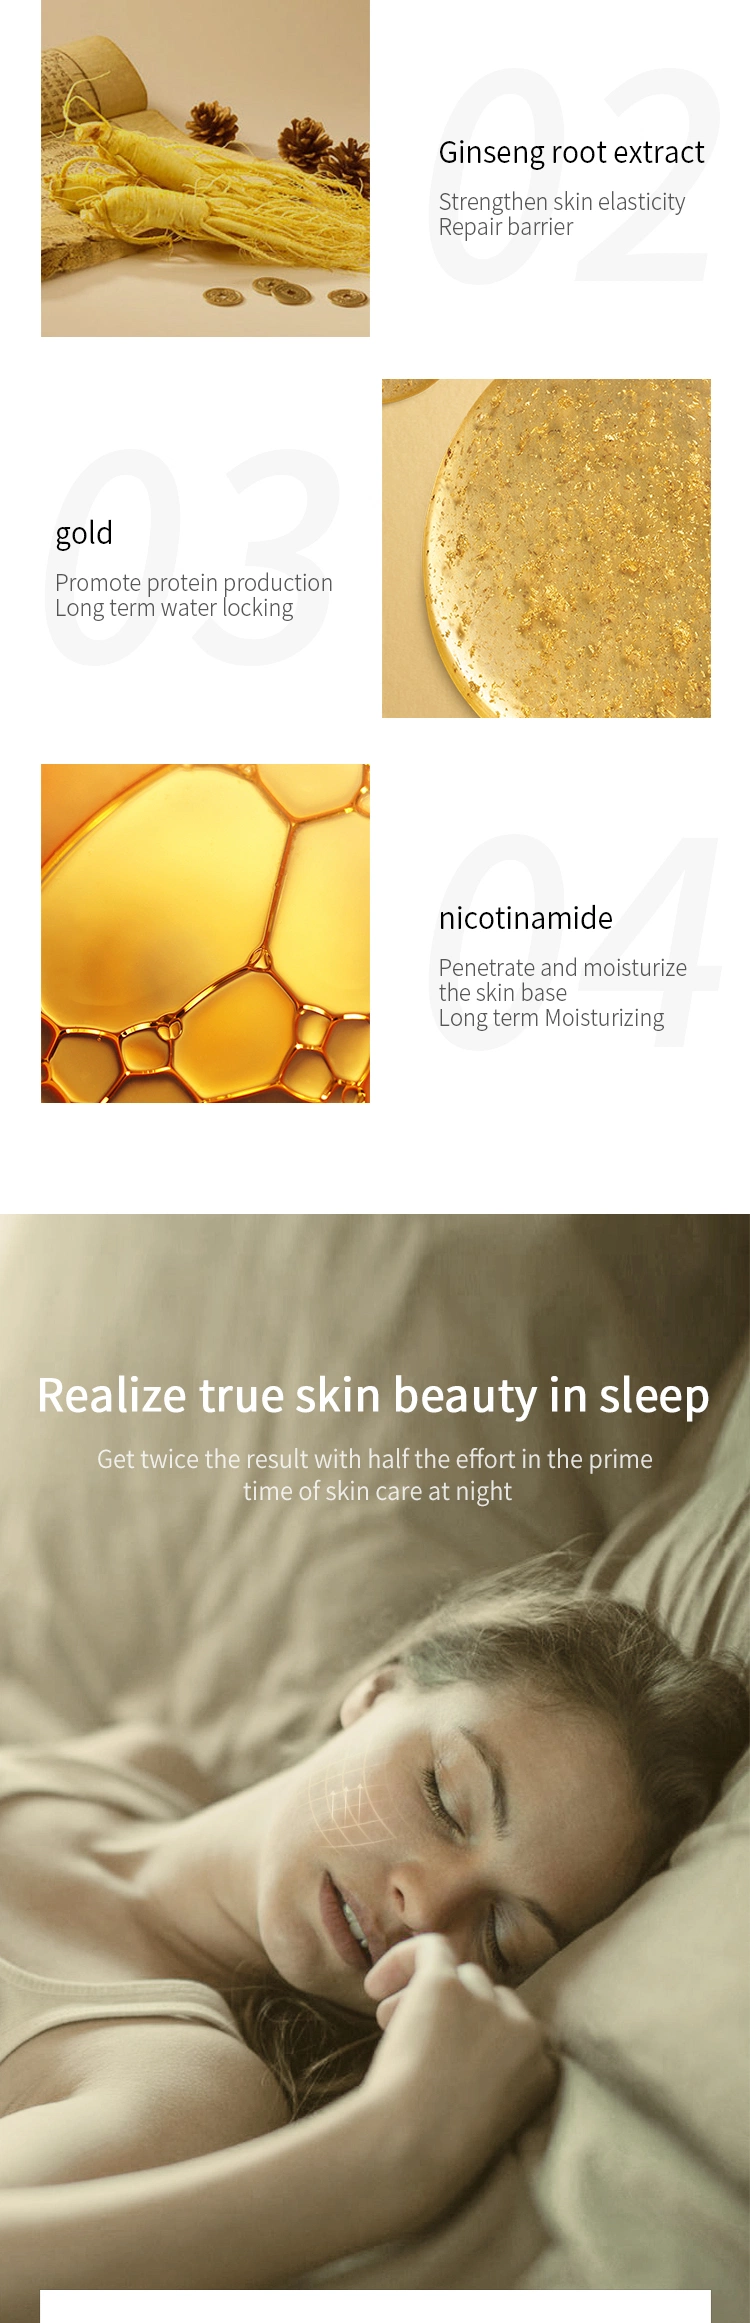 Korean Anti Aging Collagen Whitening Hydrating Sleeping Face Mask